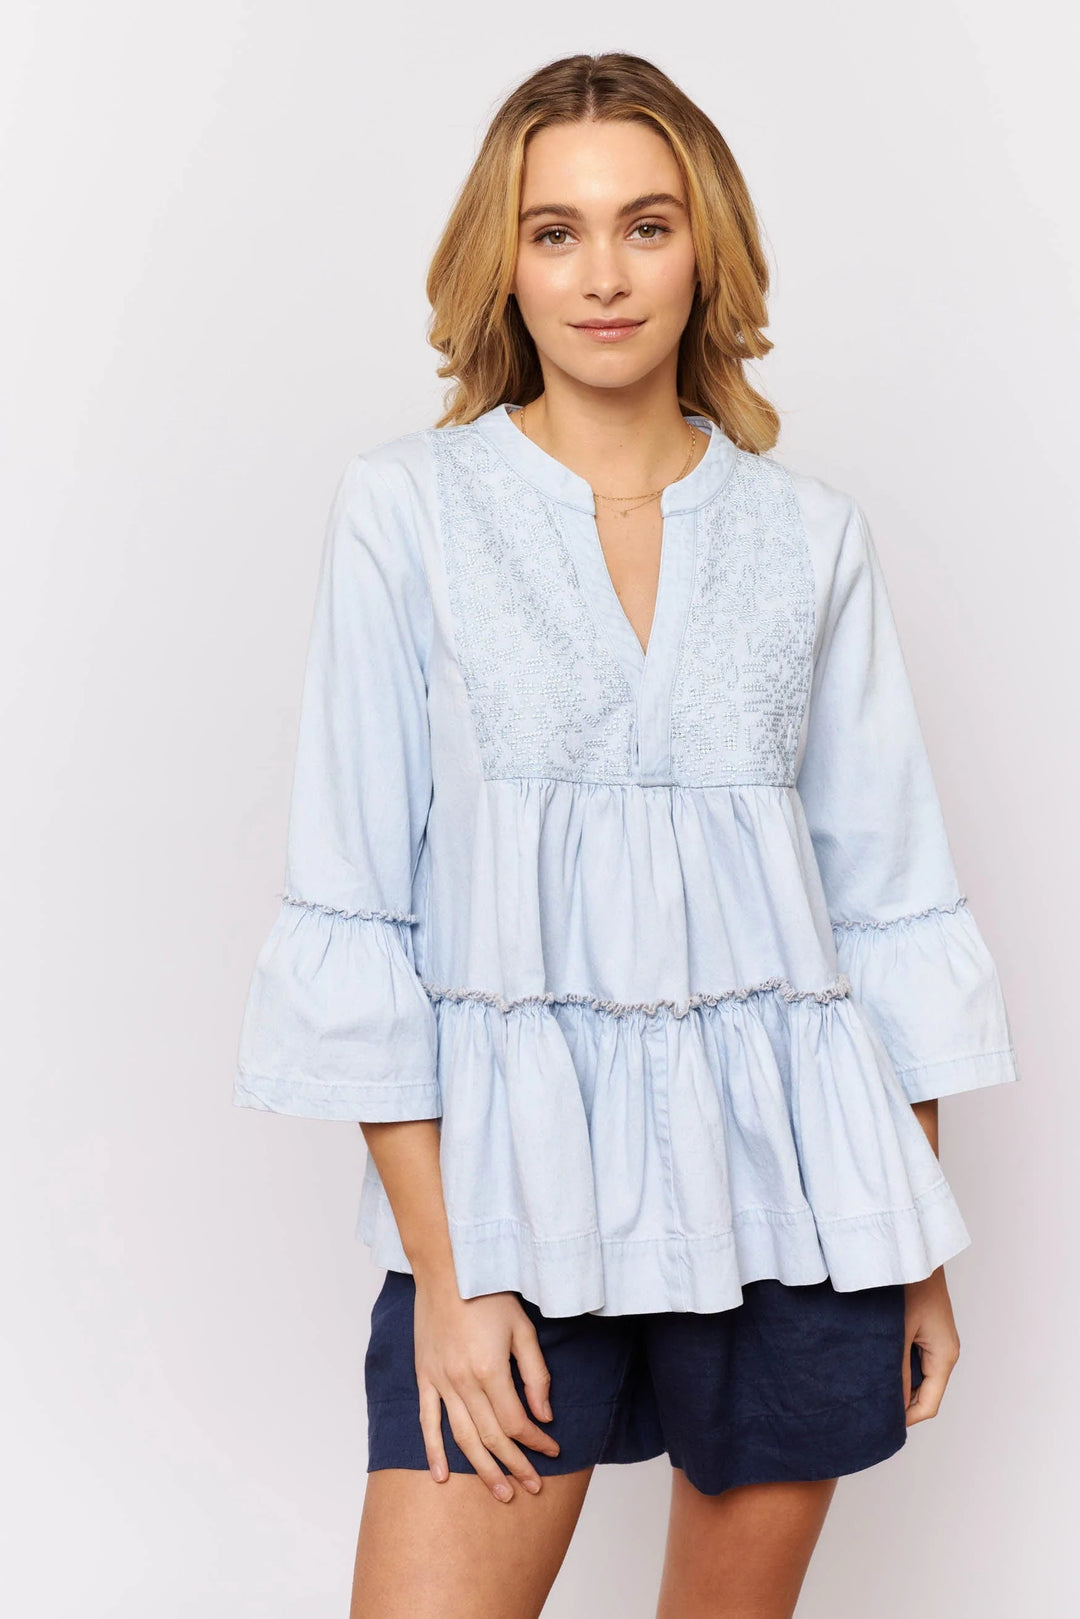 Temptress Top - Pale Blue Denim blouse Alessandra   